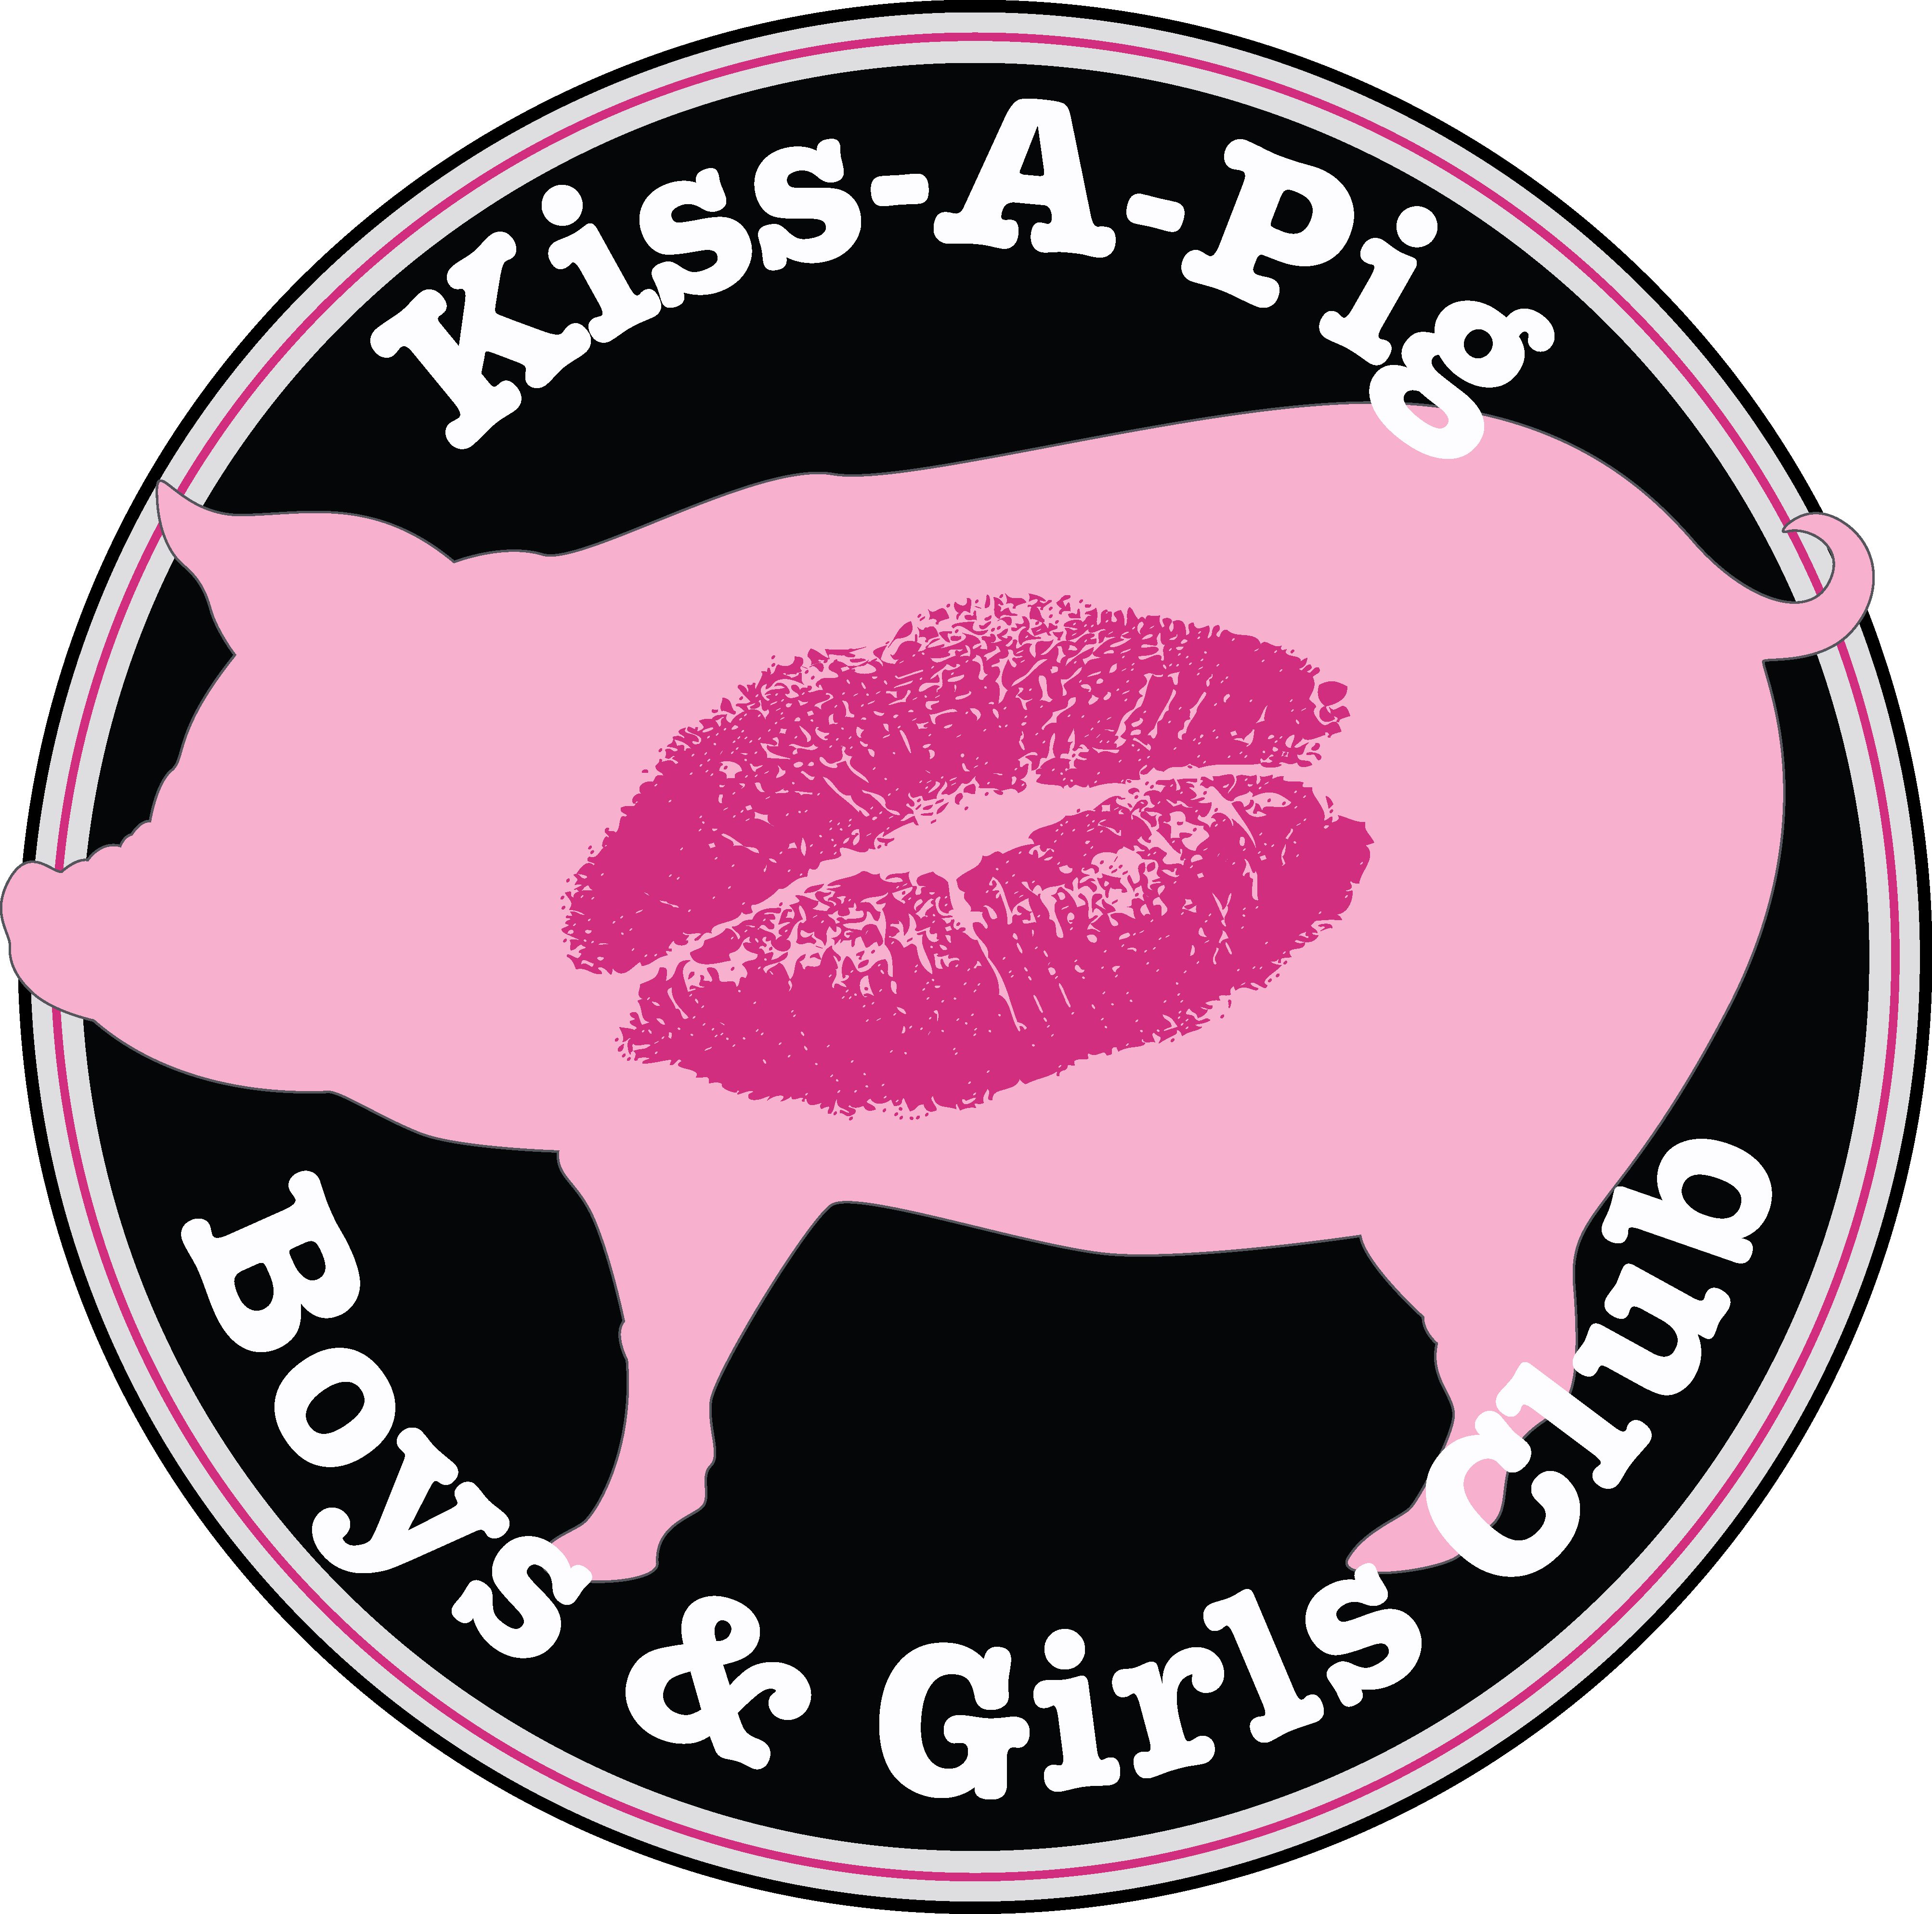 Kiss-A-Pig